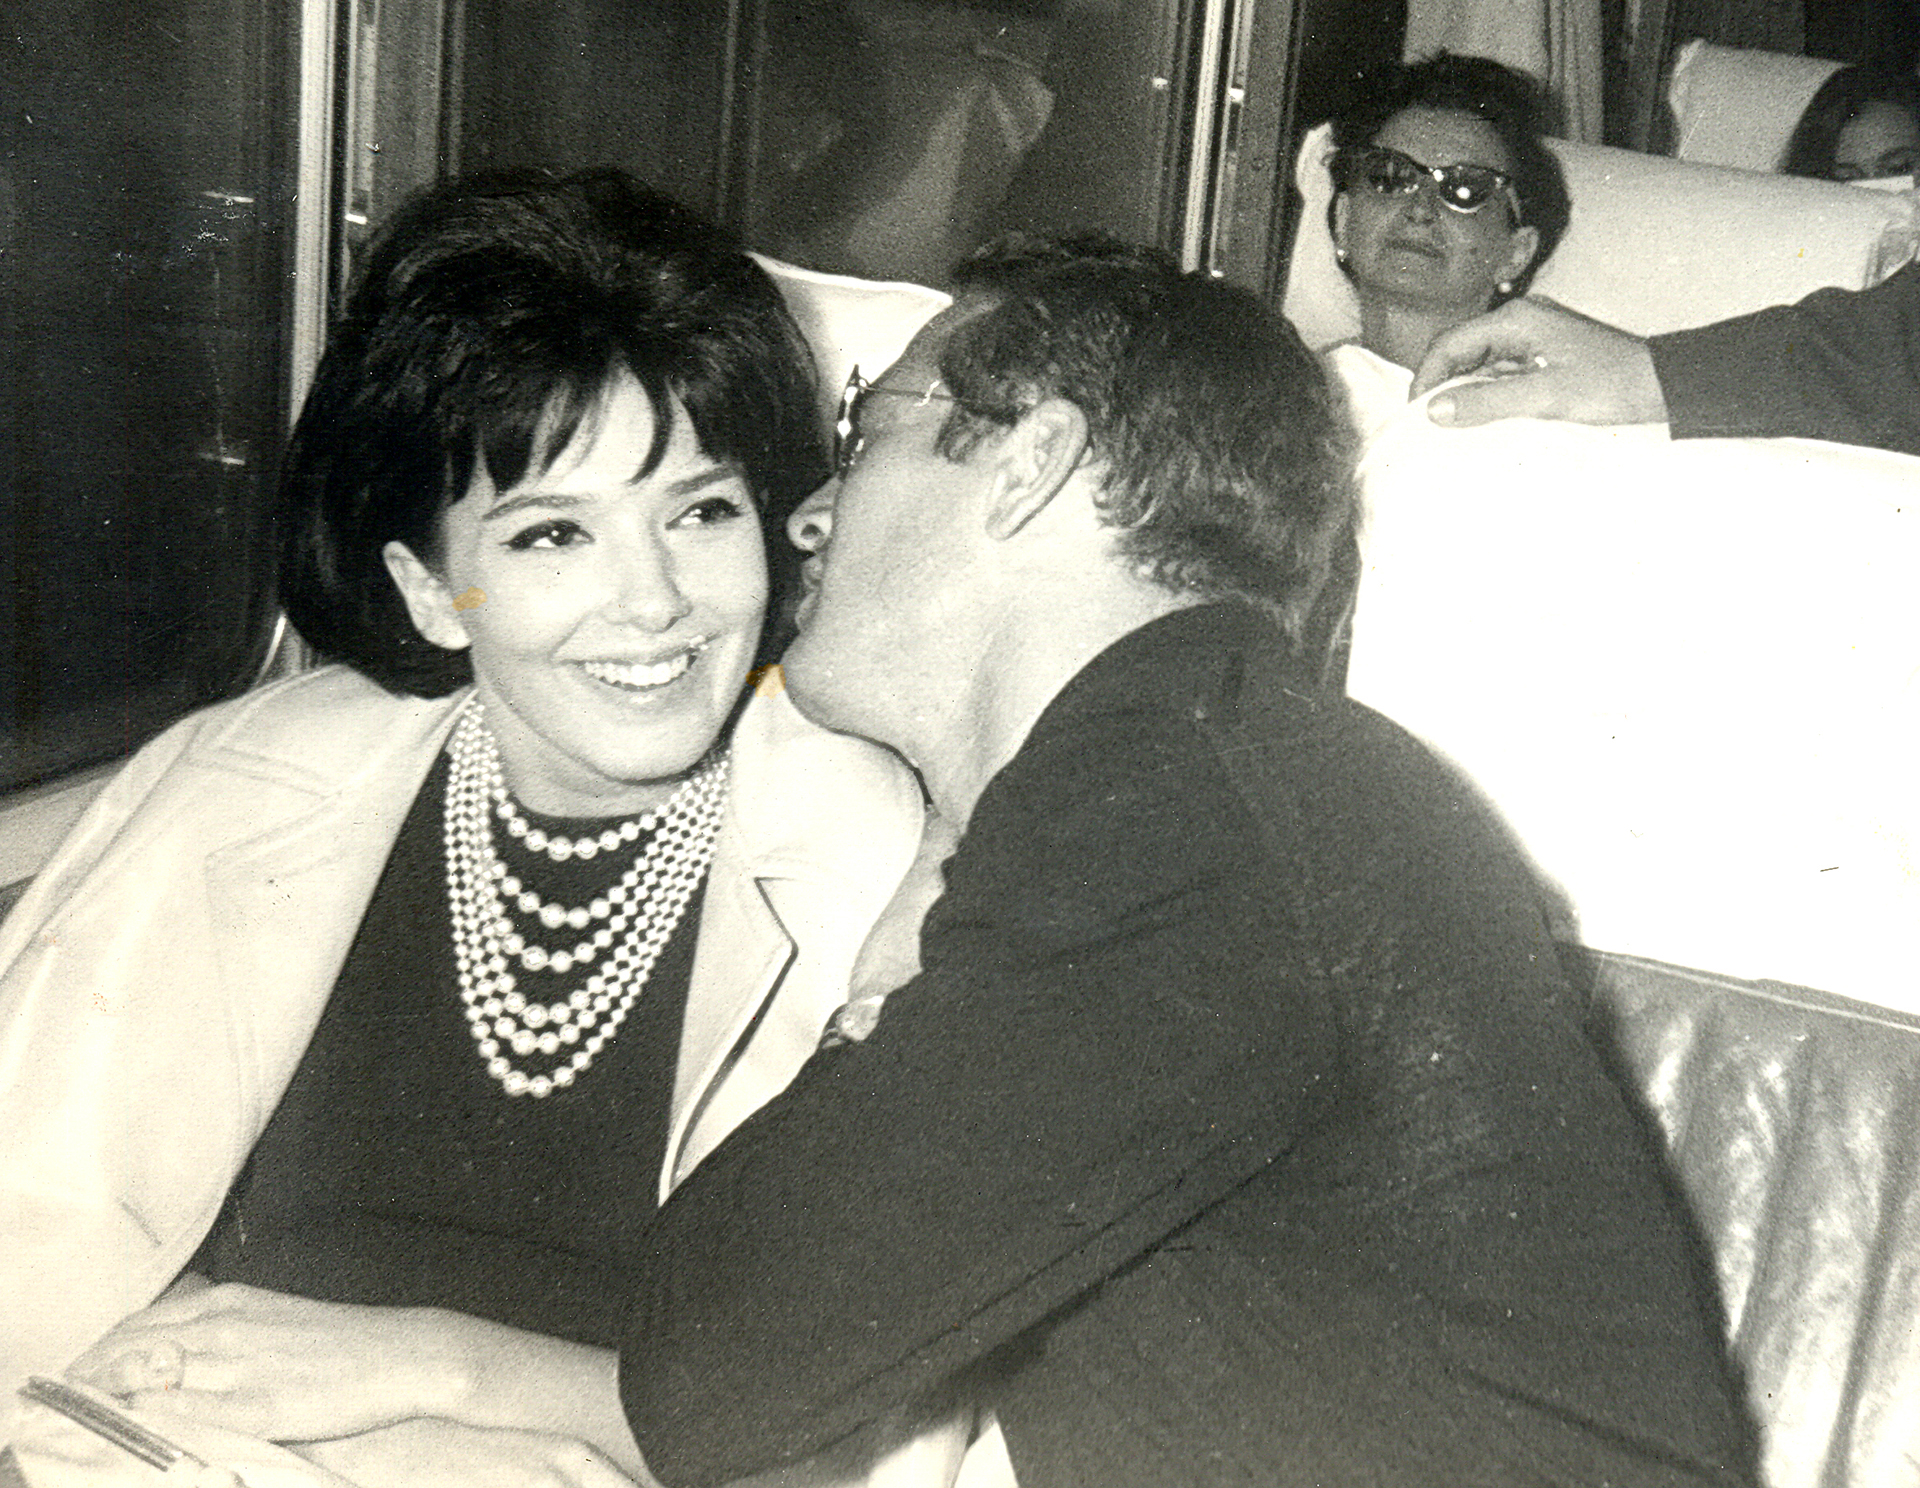 Graciela Borges y Paul Newman viajando juntos en el "tren de las estrellas" desde Buenos Aires a Mar del Plata en 1962 (Foto: Film&Arts)